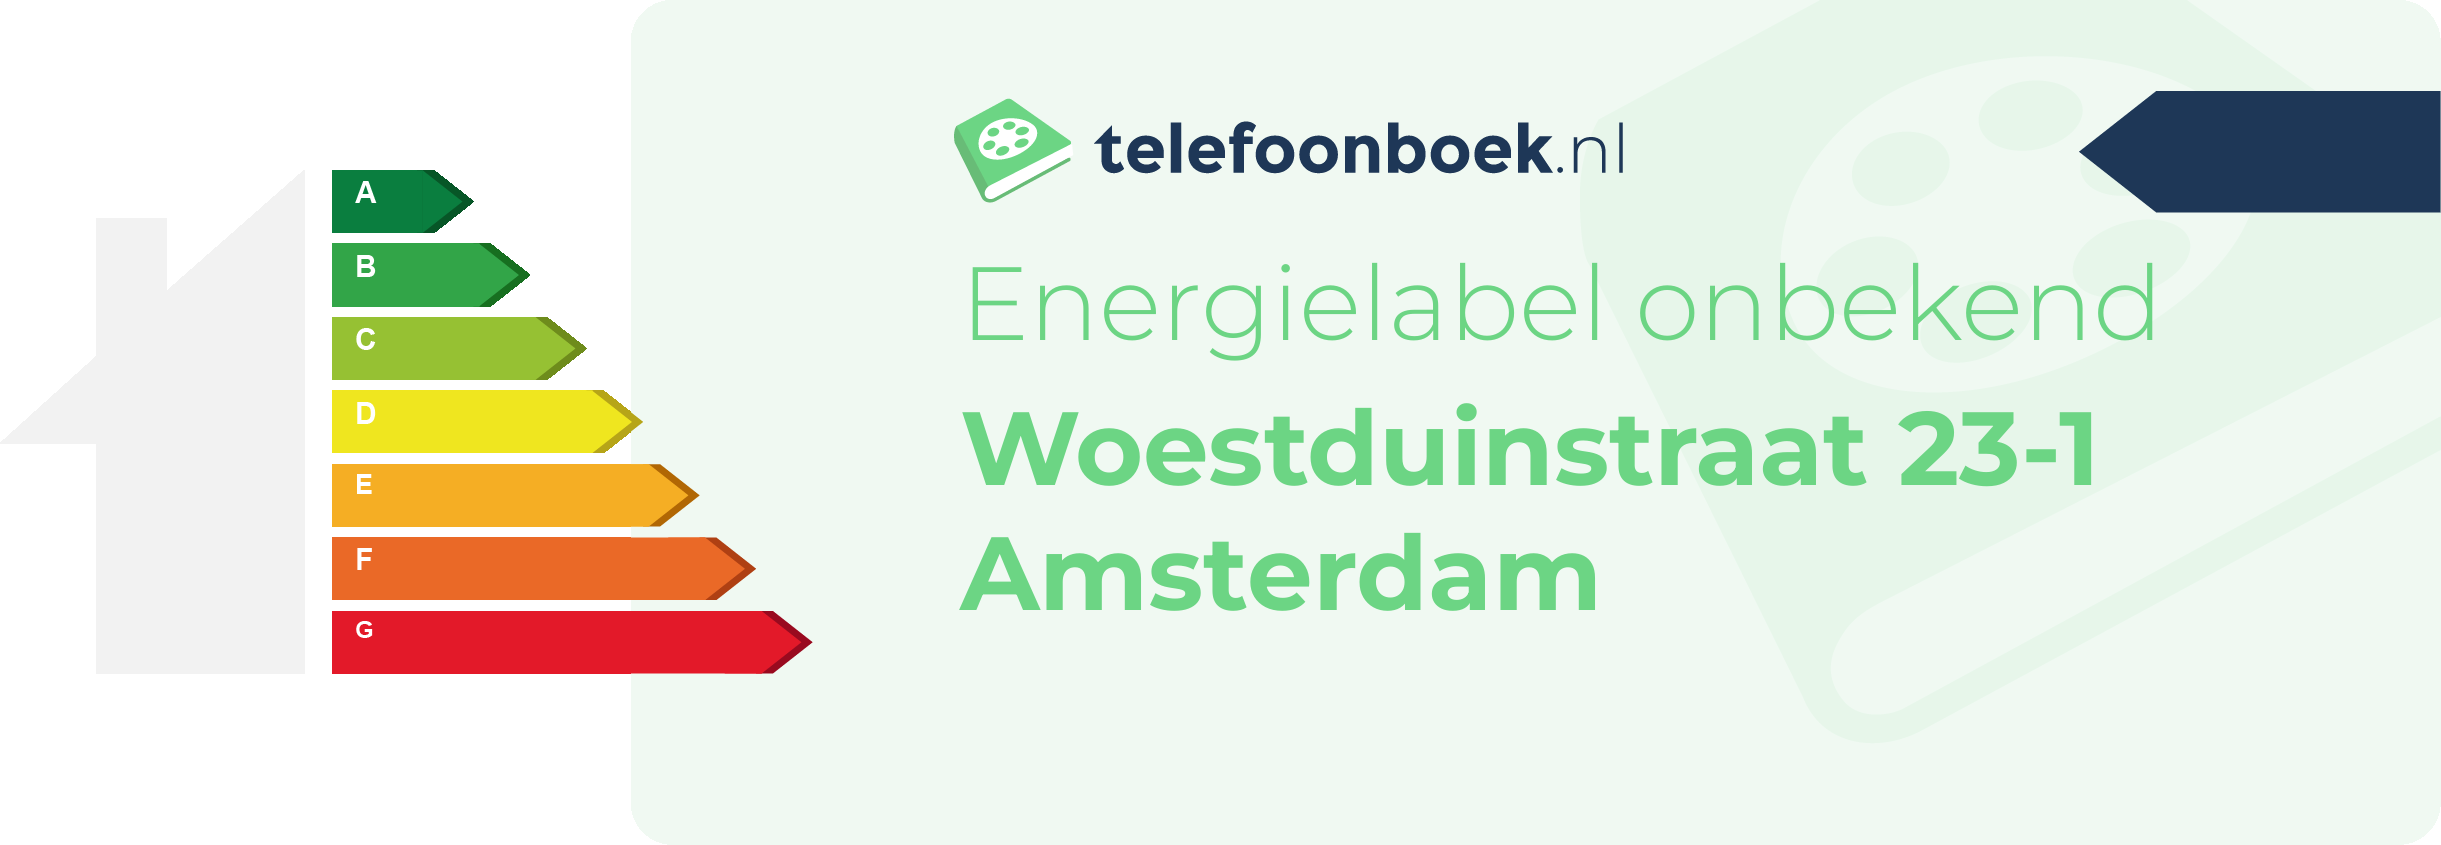 Energielabel Woestduinstraat 23-1 Amsterdam